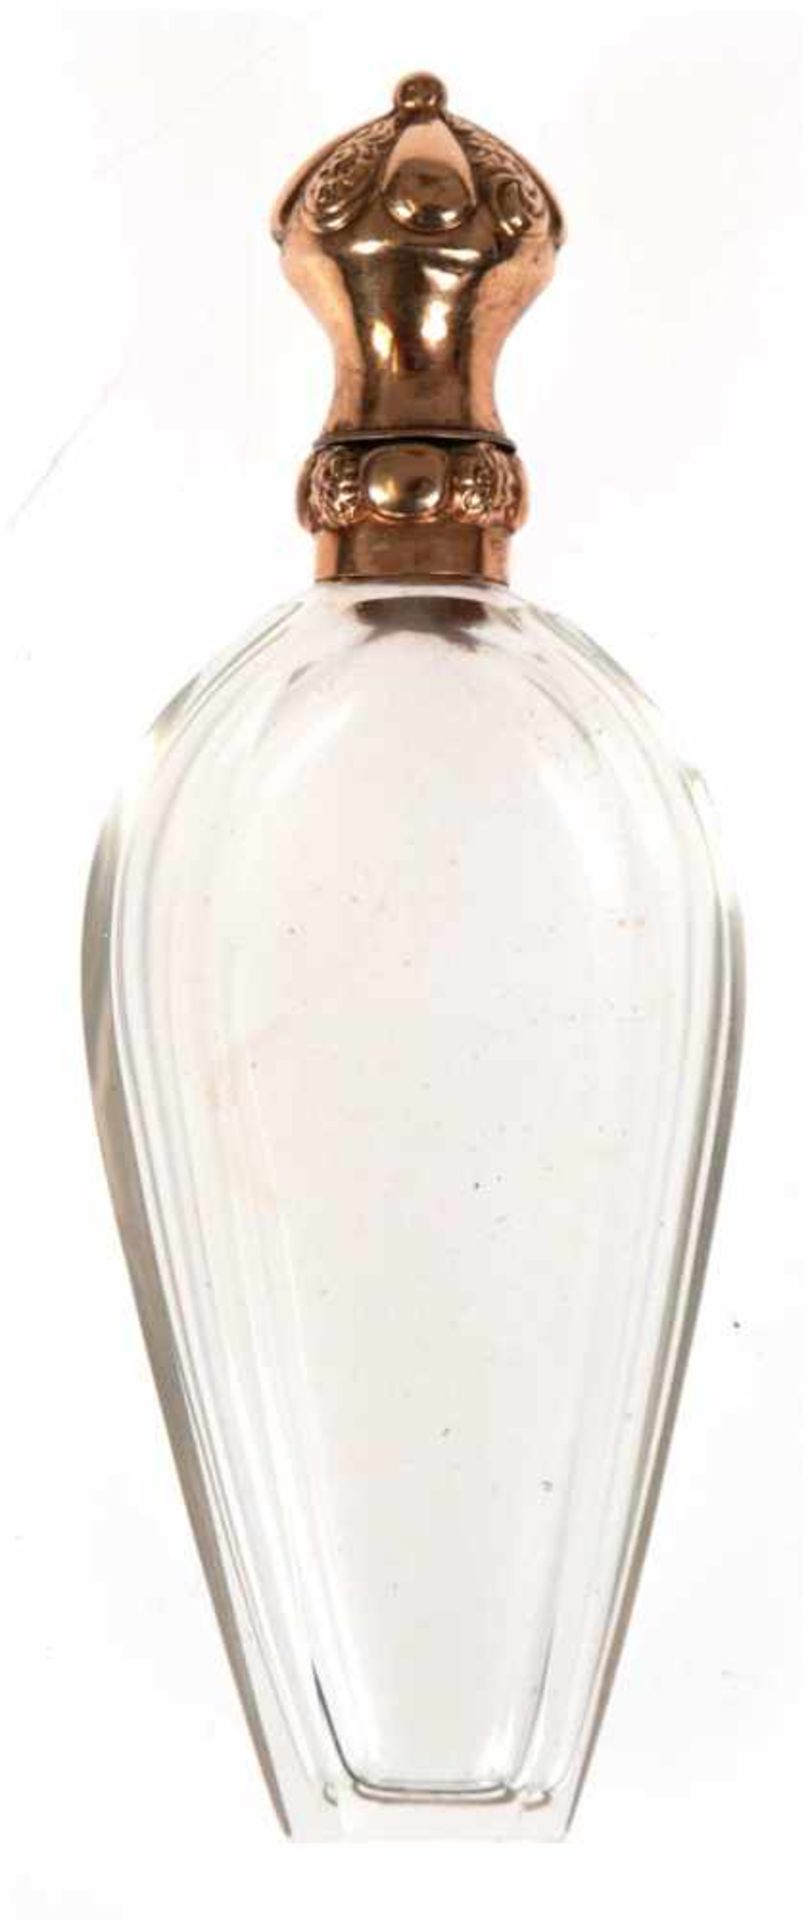 Flakon, Frankreich 19. Jh., facettiert geschliffener Klarglaskorpus mit 18 k GG-Verschluß,floral